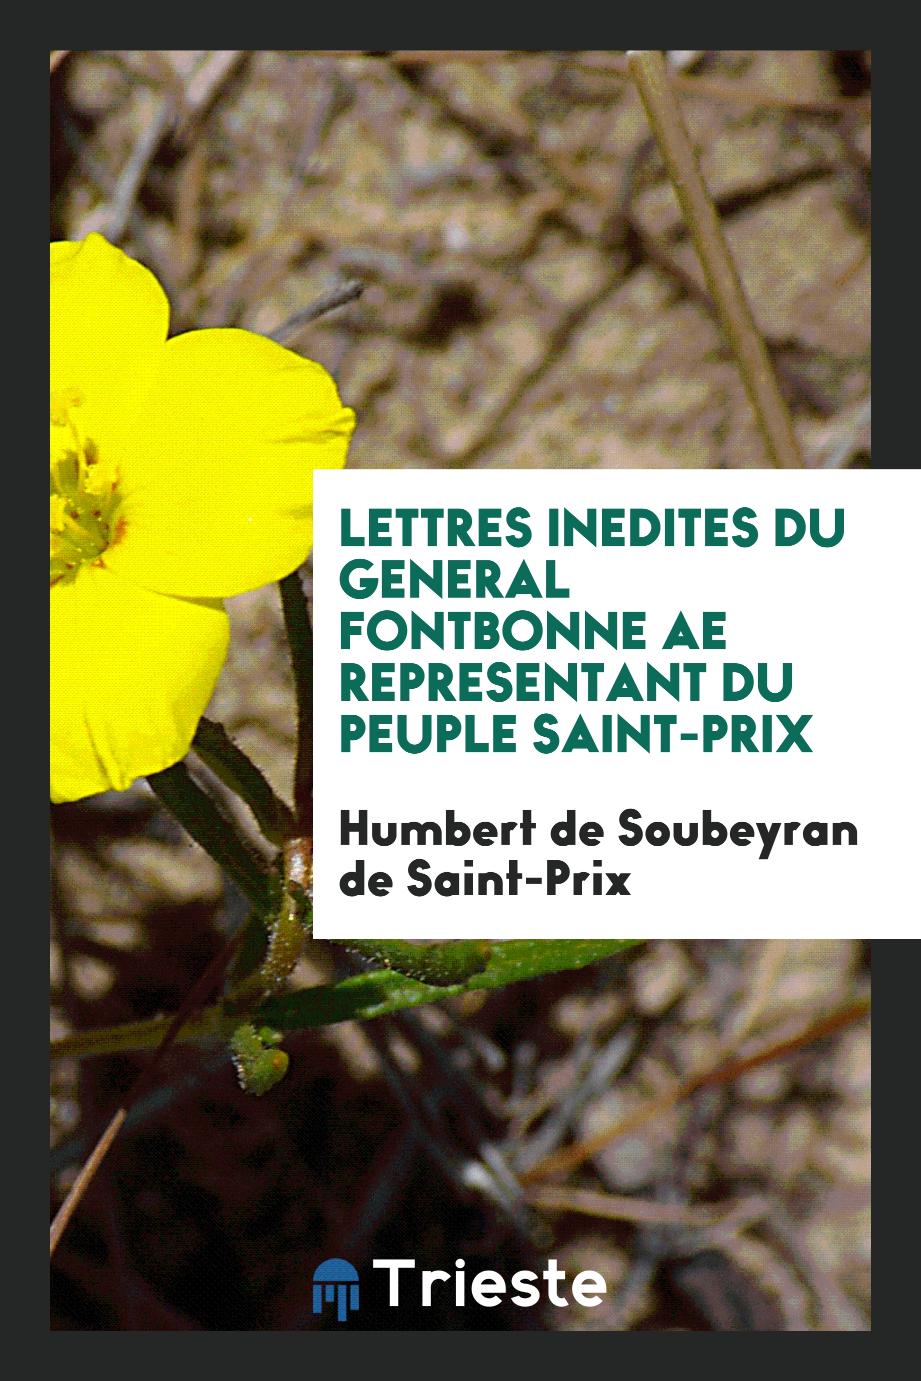 Lettres inedites du general Fontbonne ae representant du peuple Saint-Prix